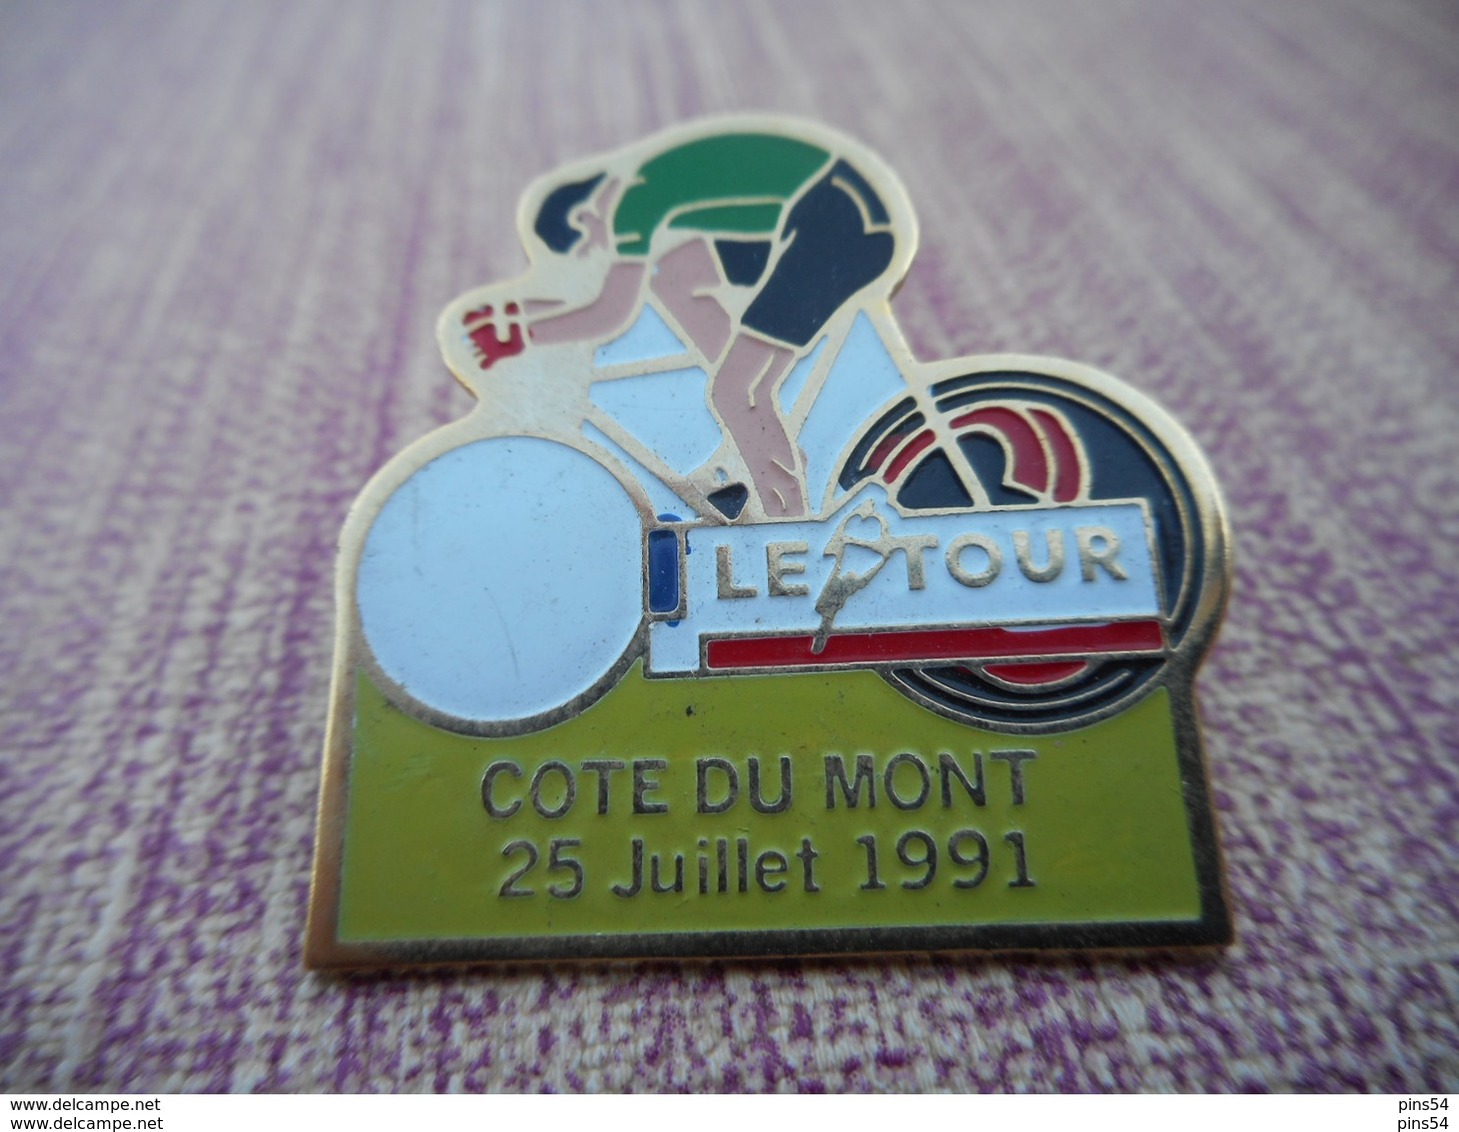 A004 -- Pin's Le Tour Cote Du Mont 25 Juillet 1991 - Cyclisme